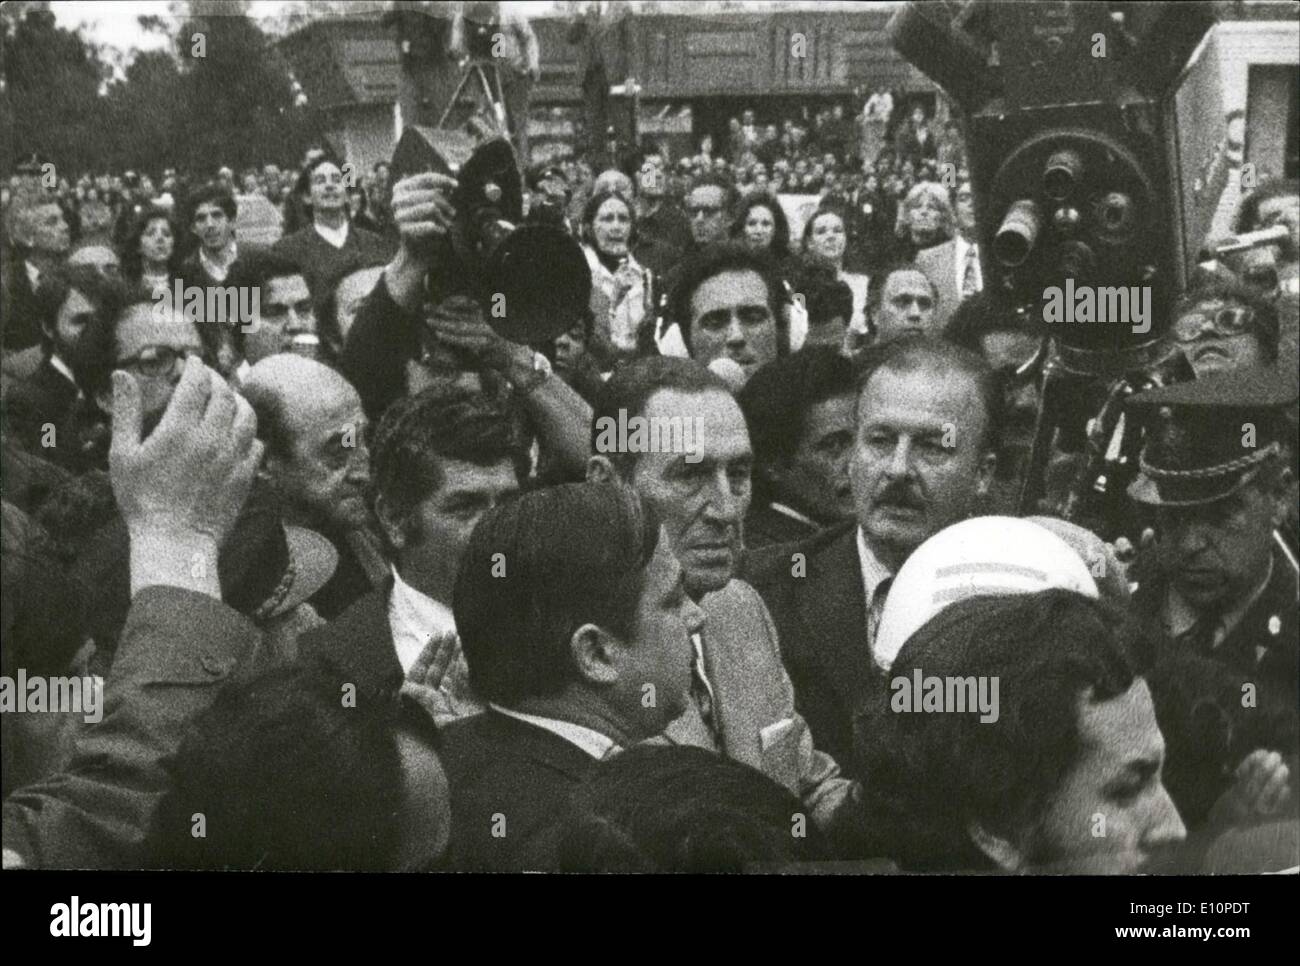 Sept. 09, 1973 - Beerdigung von Labor Leader Jose Rucci durch linke extremistische Terroristen getötet. Stockfoto